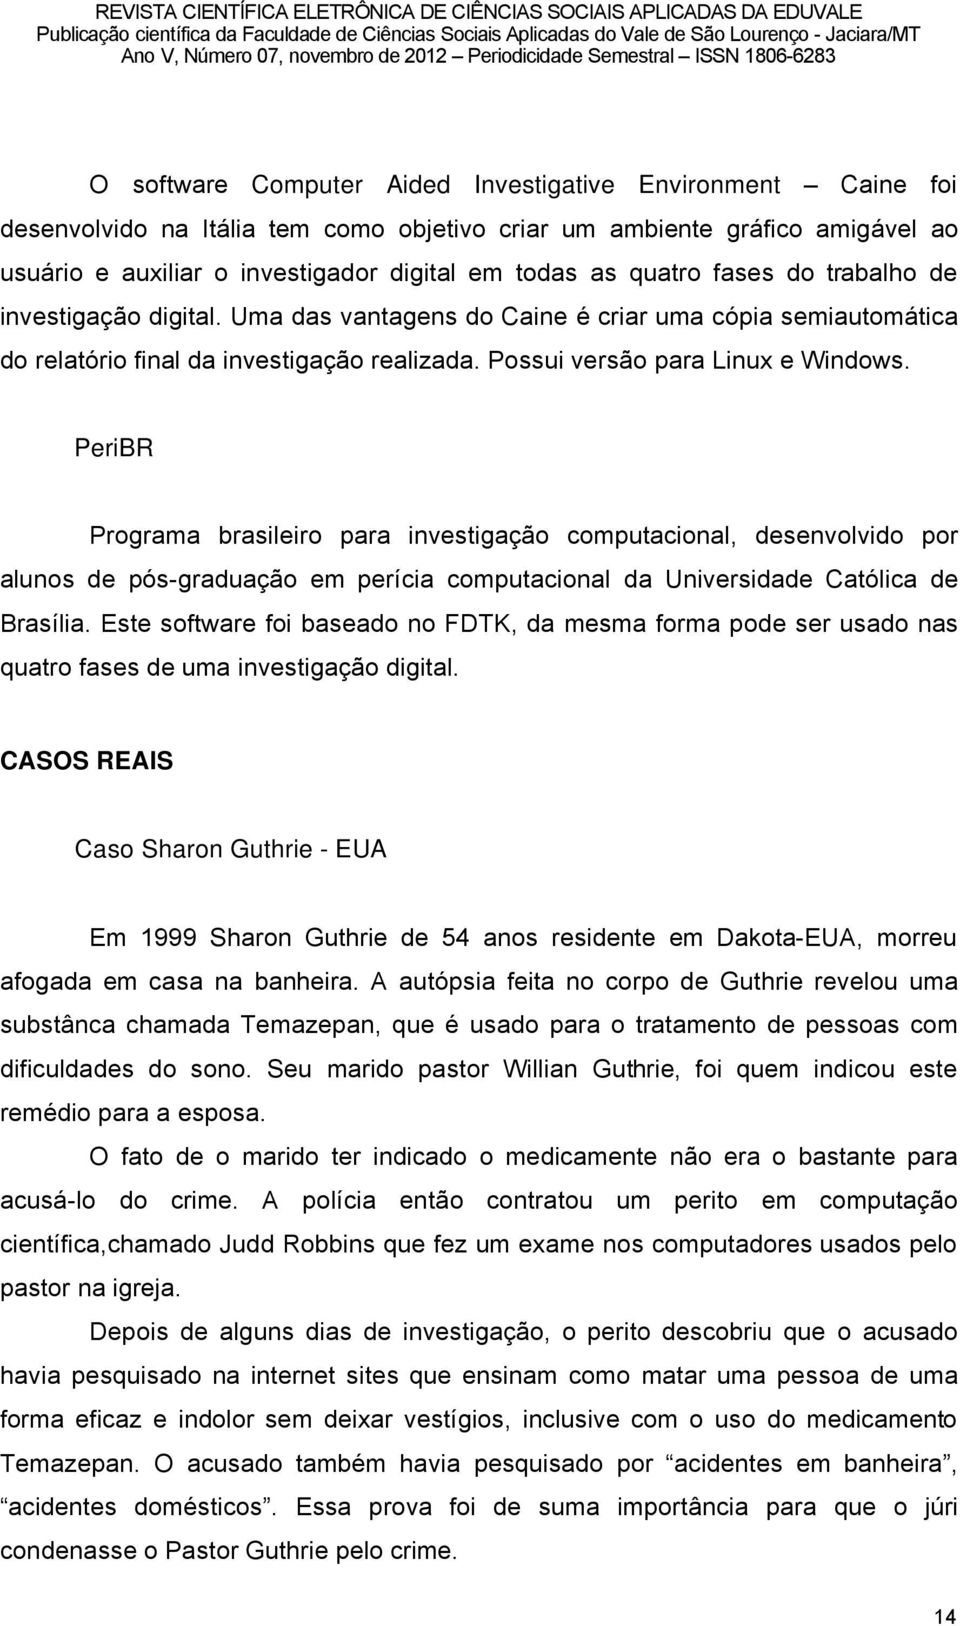 PeriBR Programa brasileiro para investigaéño computacional, desenvolvido por alunos de pås-graduaéño em peröcia computacional da Universidade Catålica de BrasÖlia.